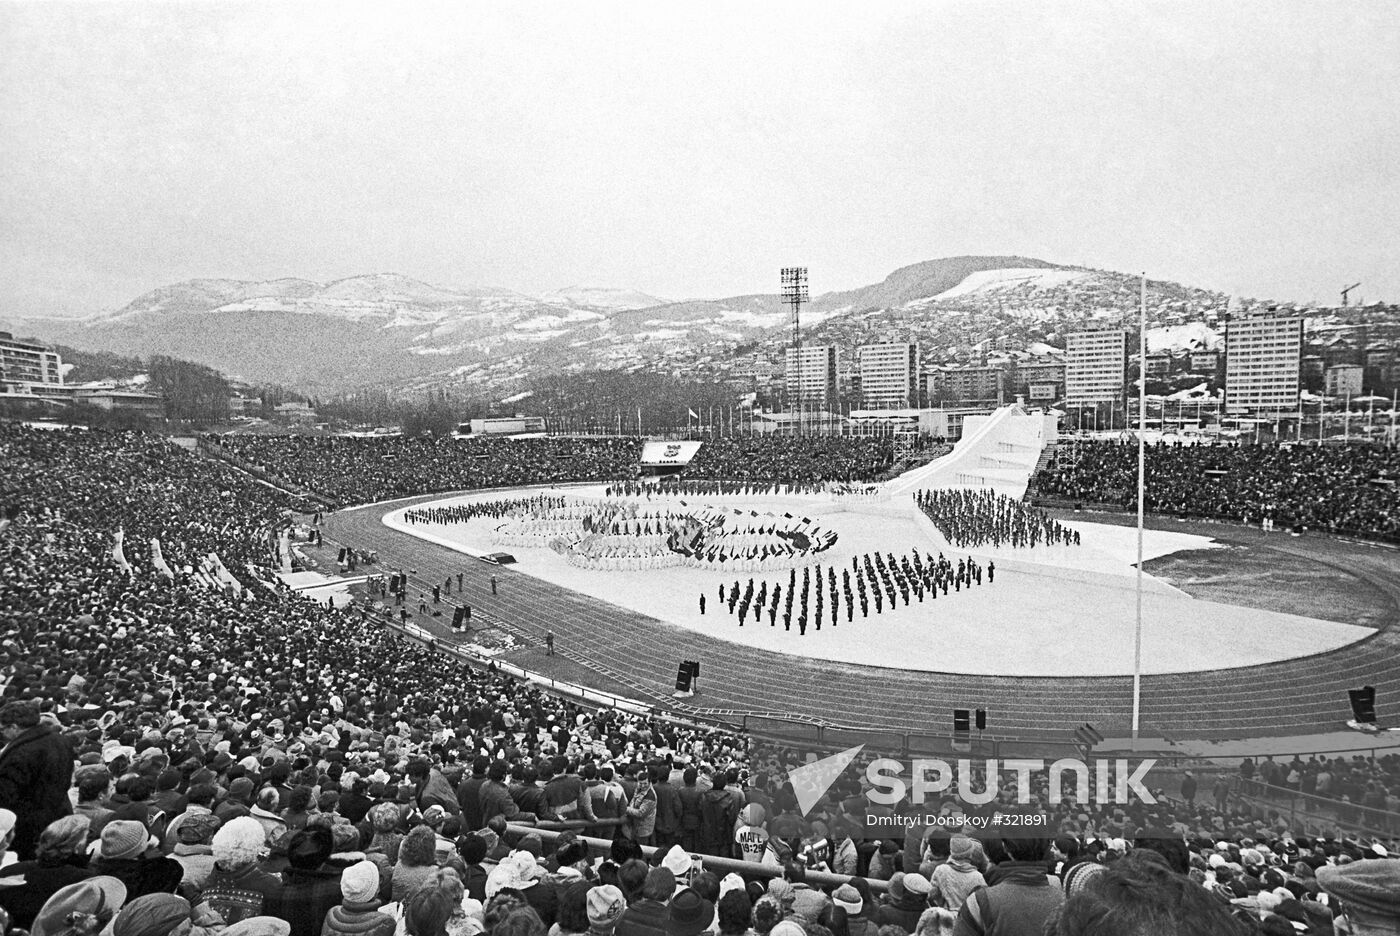 Opening Olympic ceremony in Sarajevo